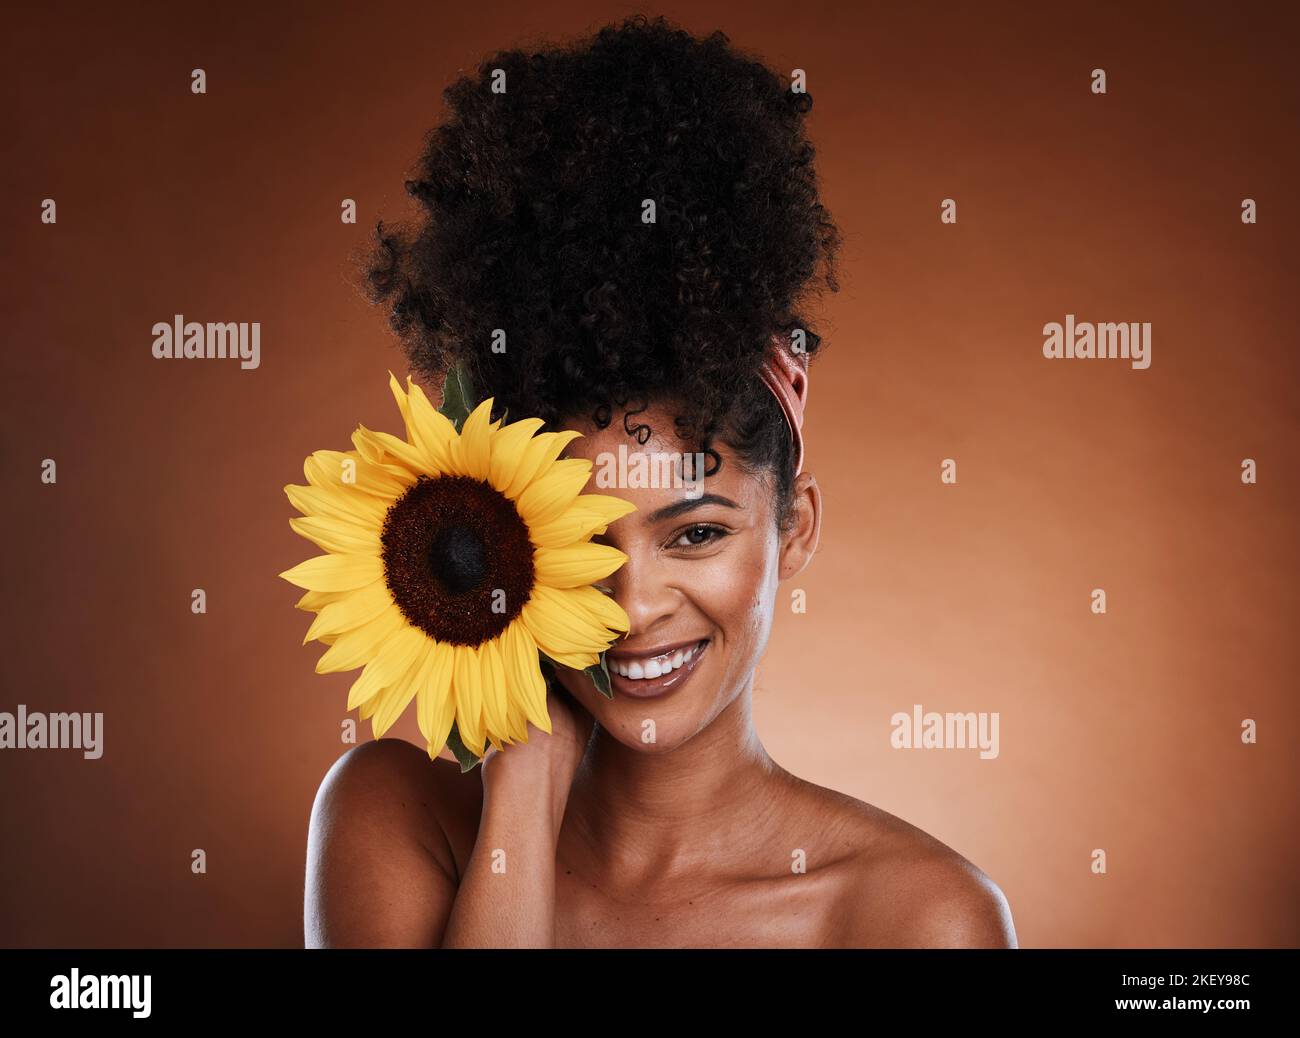 Schönheit, Hautpflege und Porträt von Modell mit Sonnenblume für Gesundheit, Wellness oder Körperpflege Antioxidantien. Gesichtskosmetik, natürliches Make-up und Gesicht Stockfoto